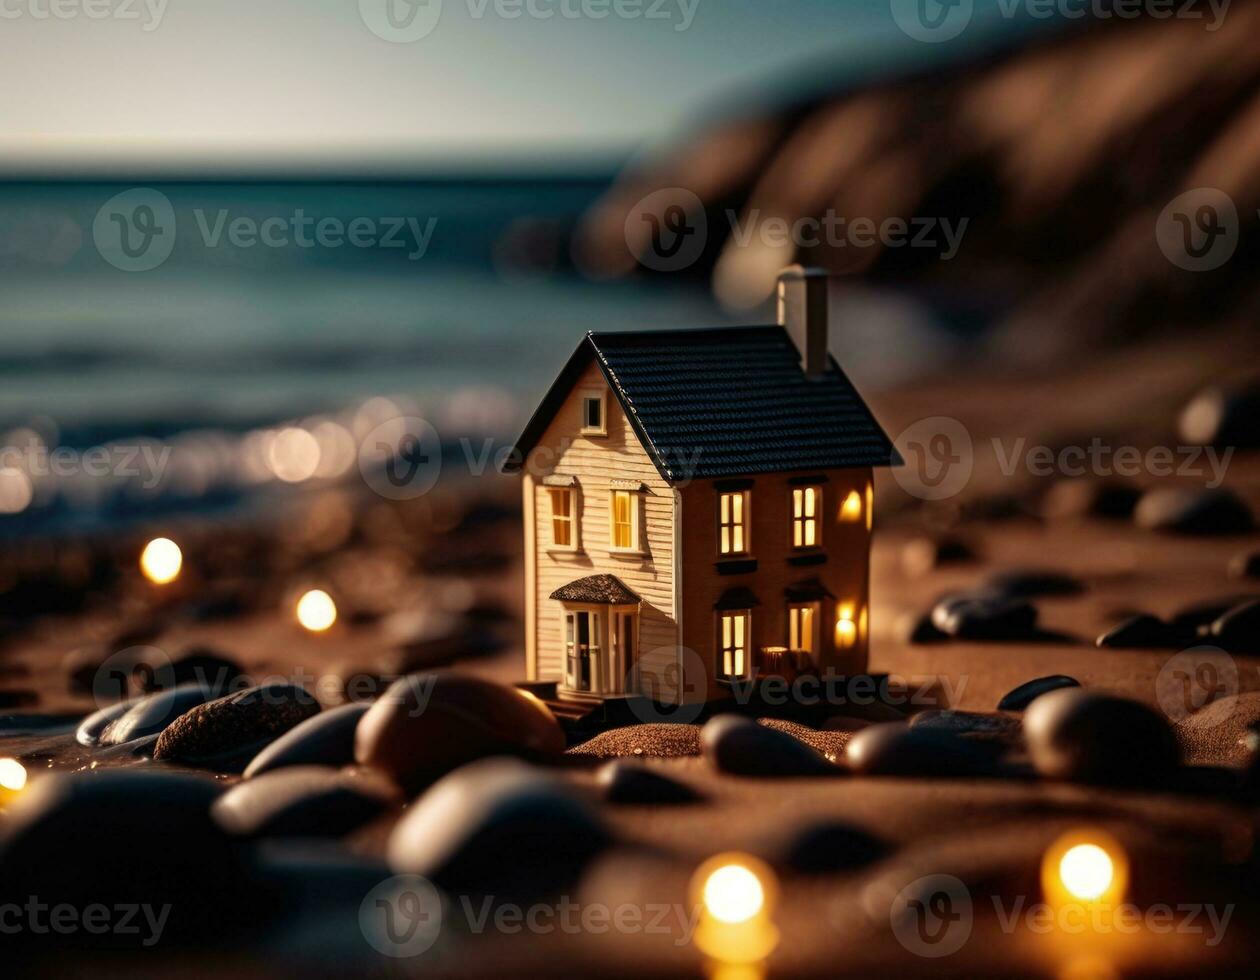 miniatura casa en el mar costa. viaje concepto. ai ilustración. foto